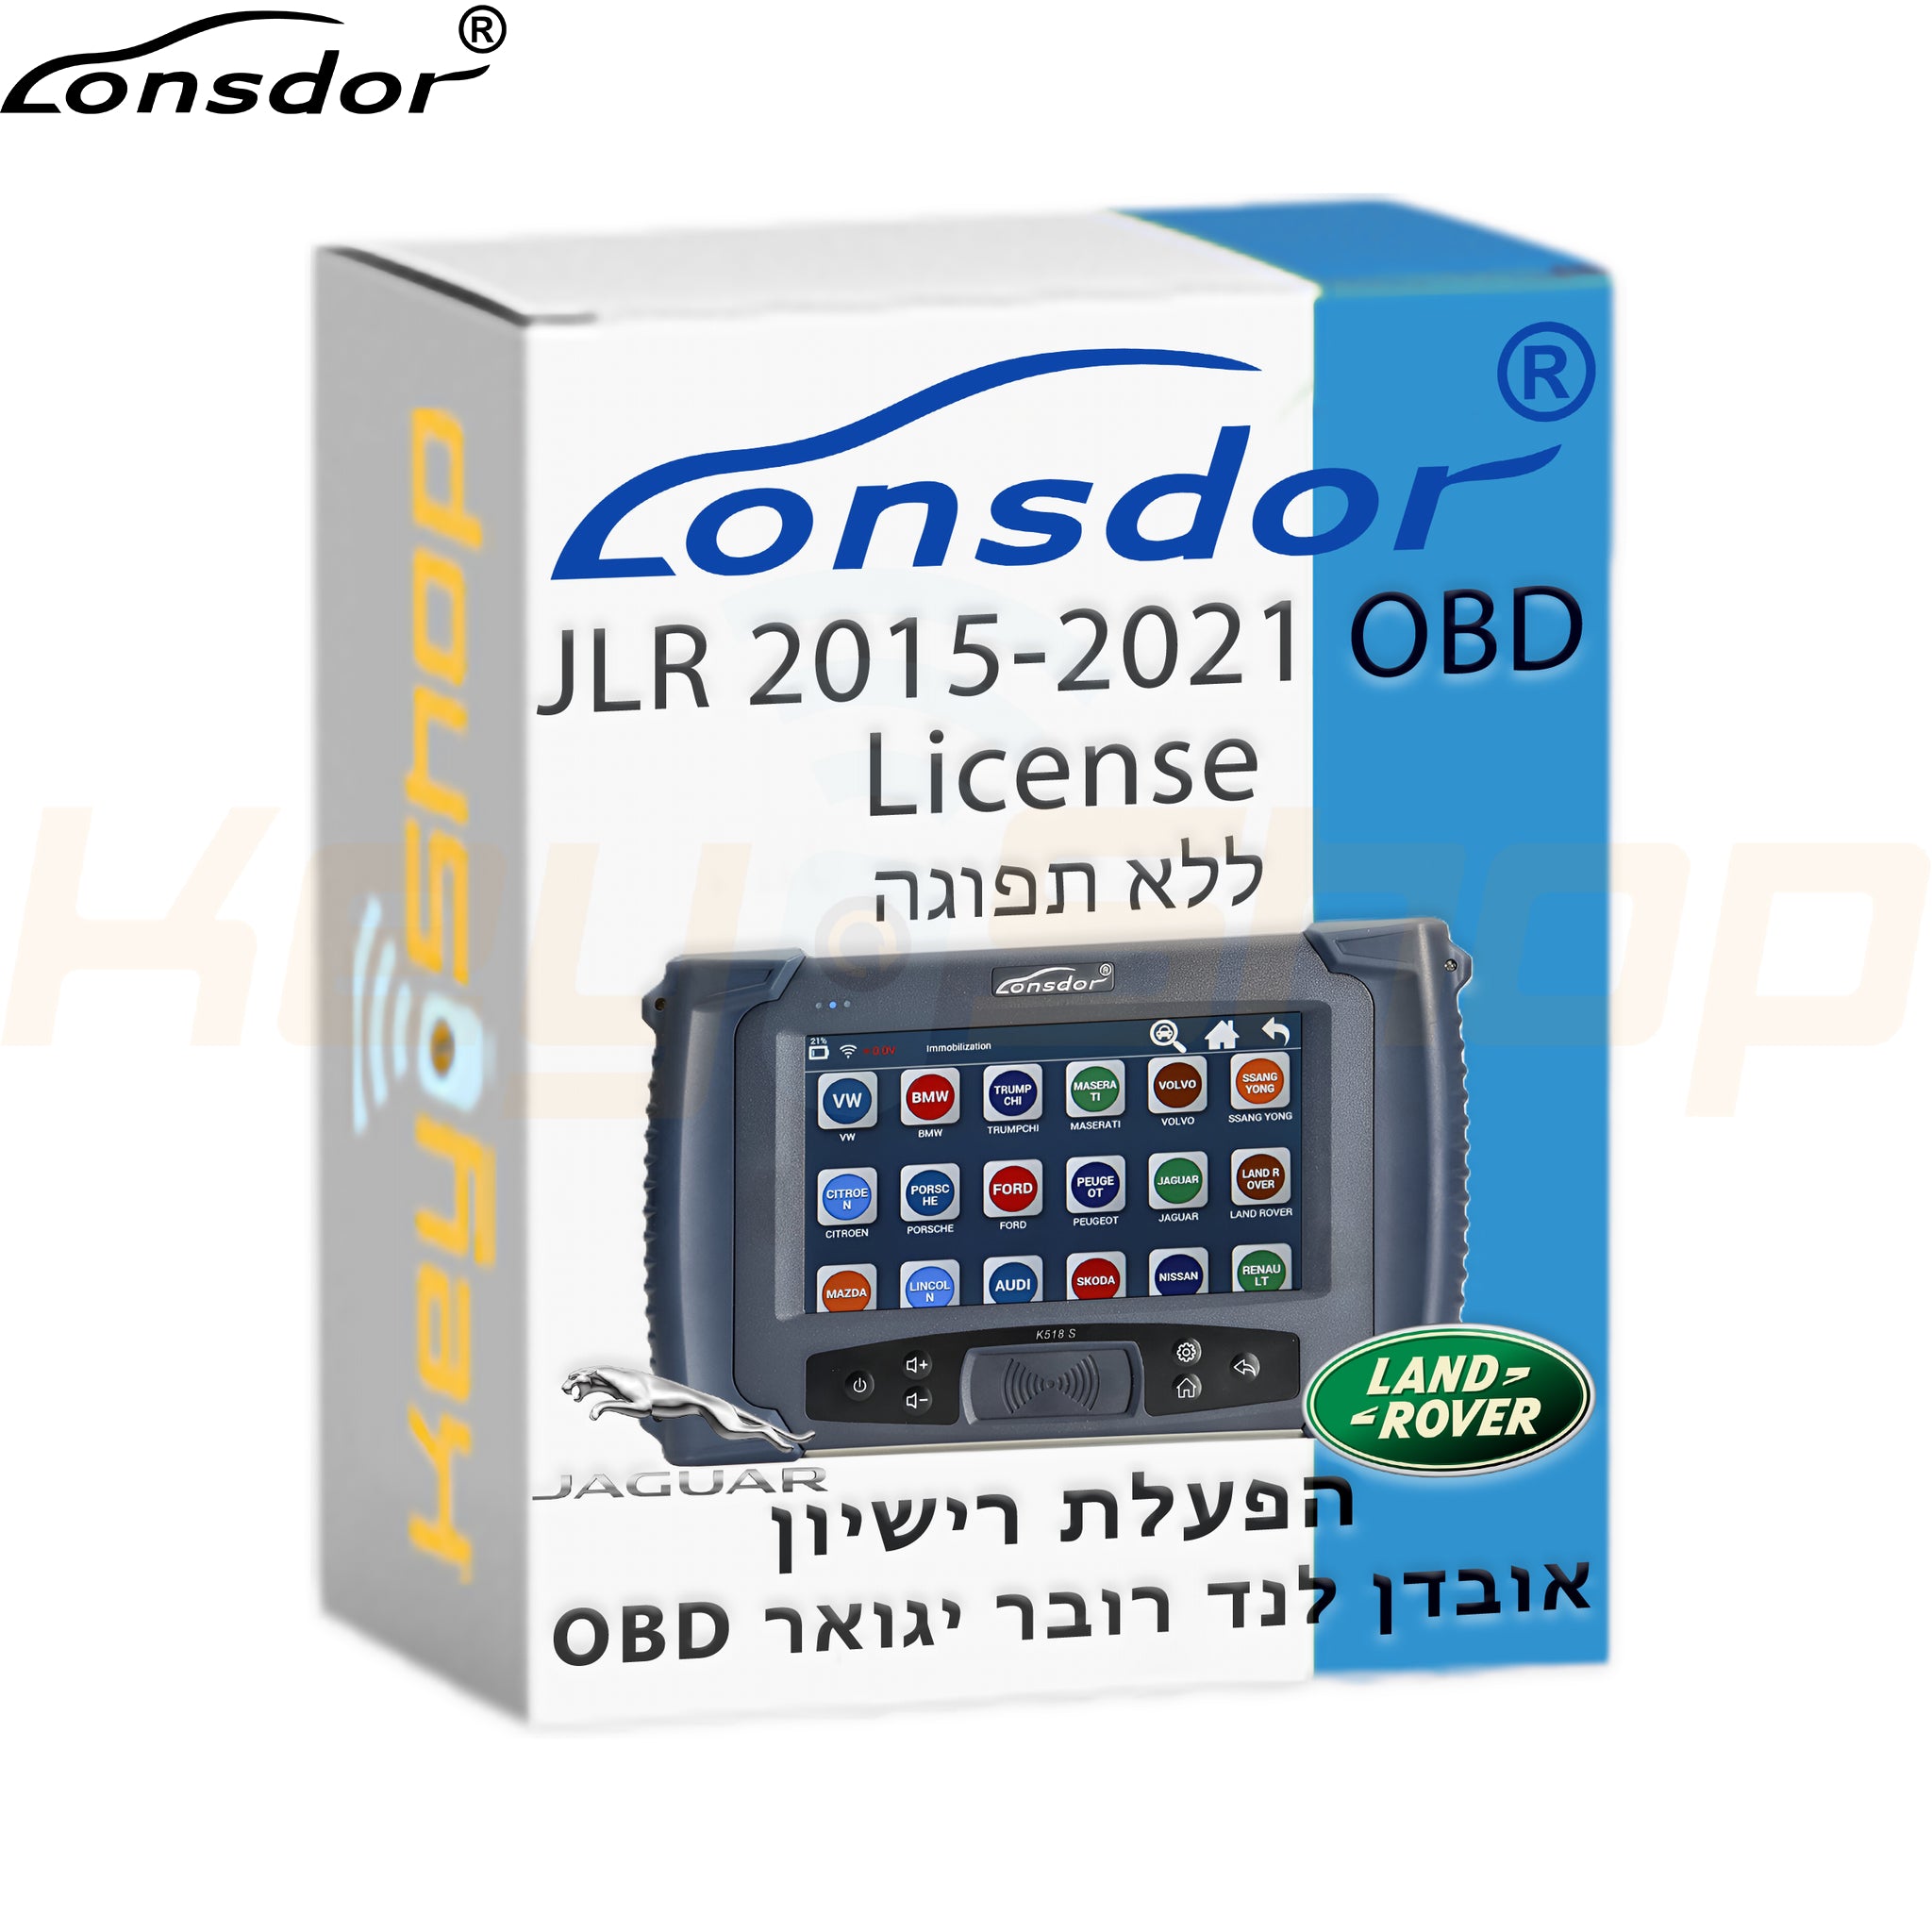 Lonsdor JLR License - רישיון לונסדור לנד רוובר/יגואר